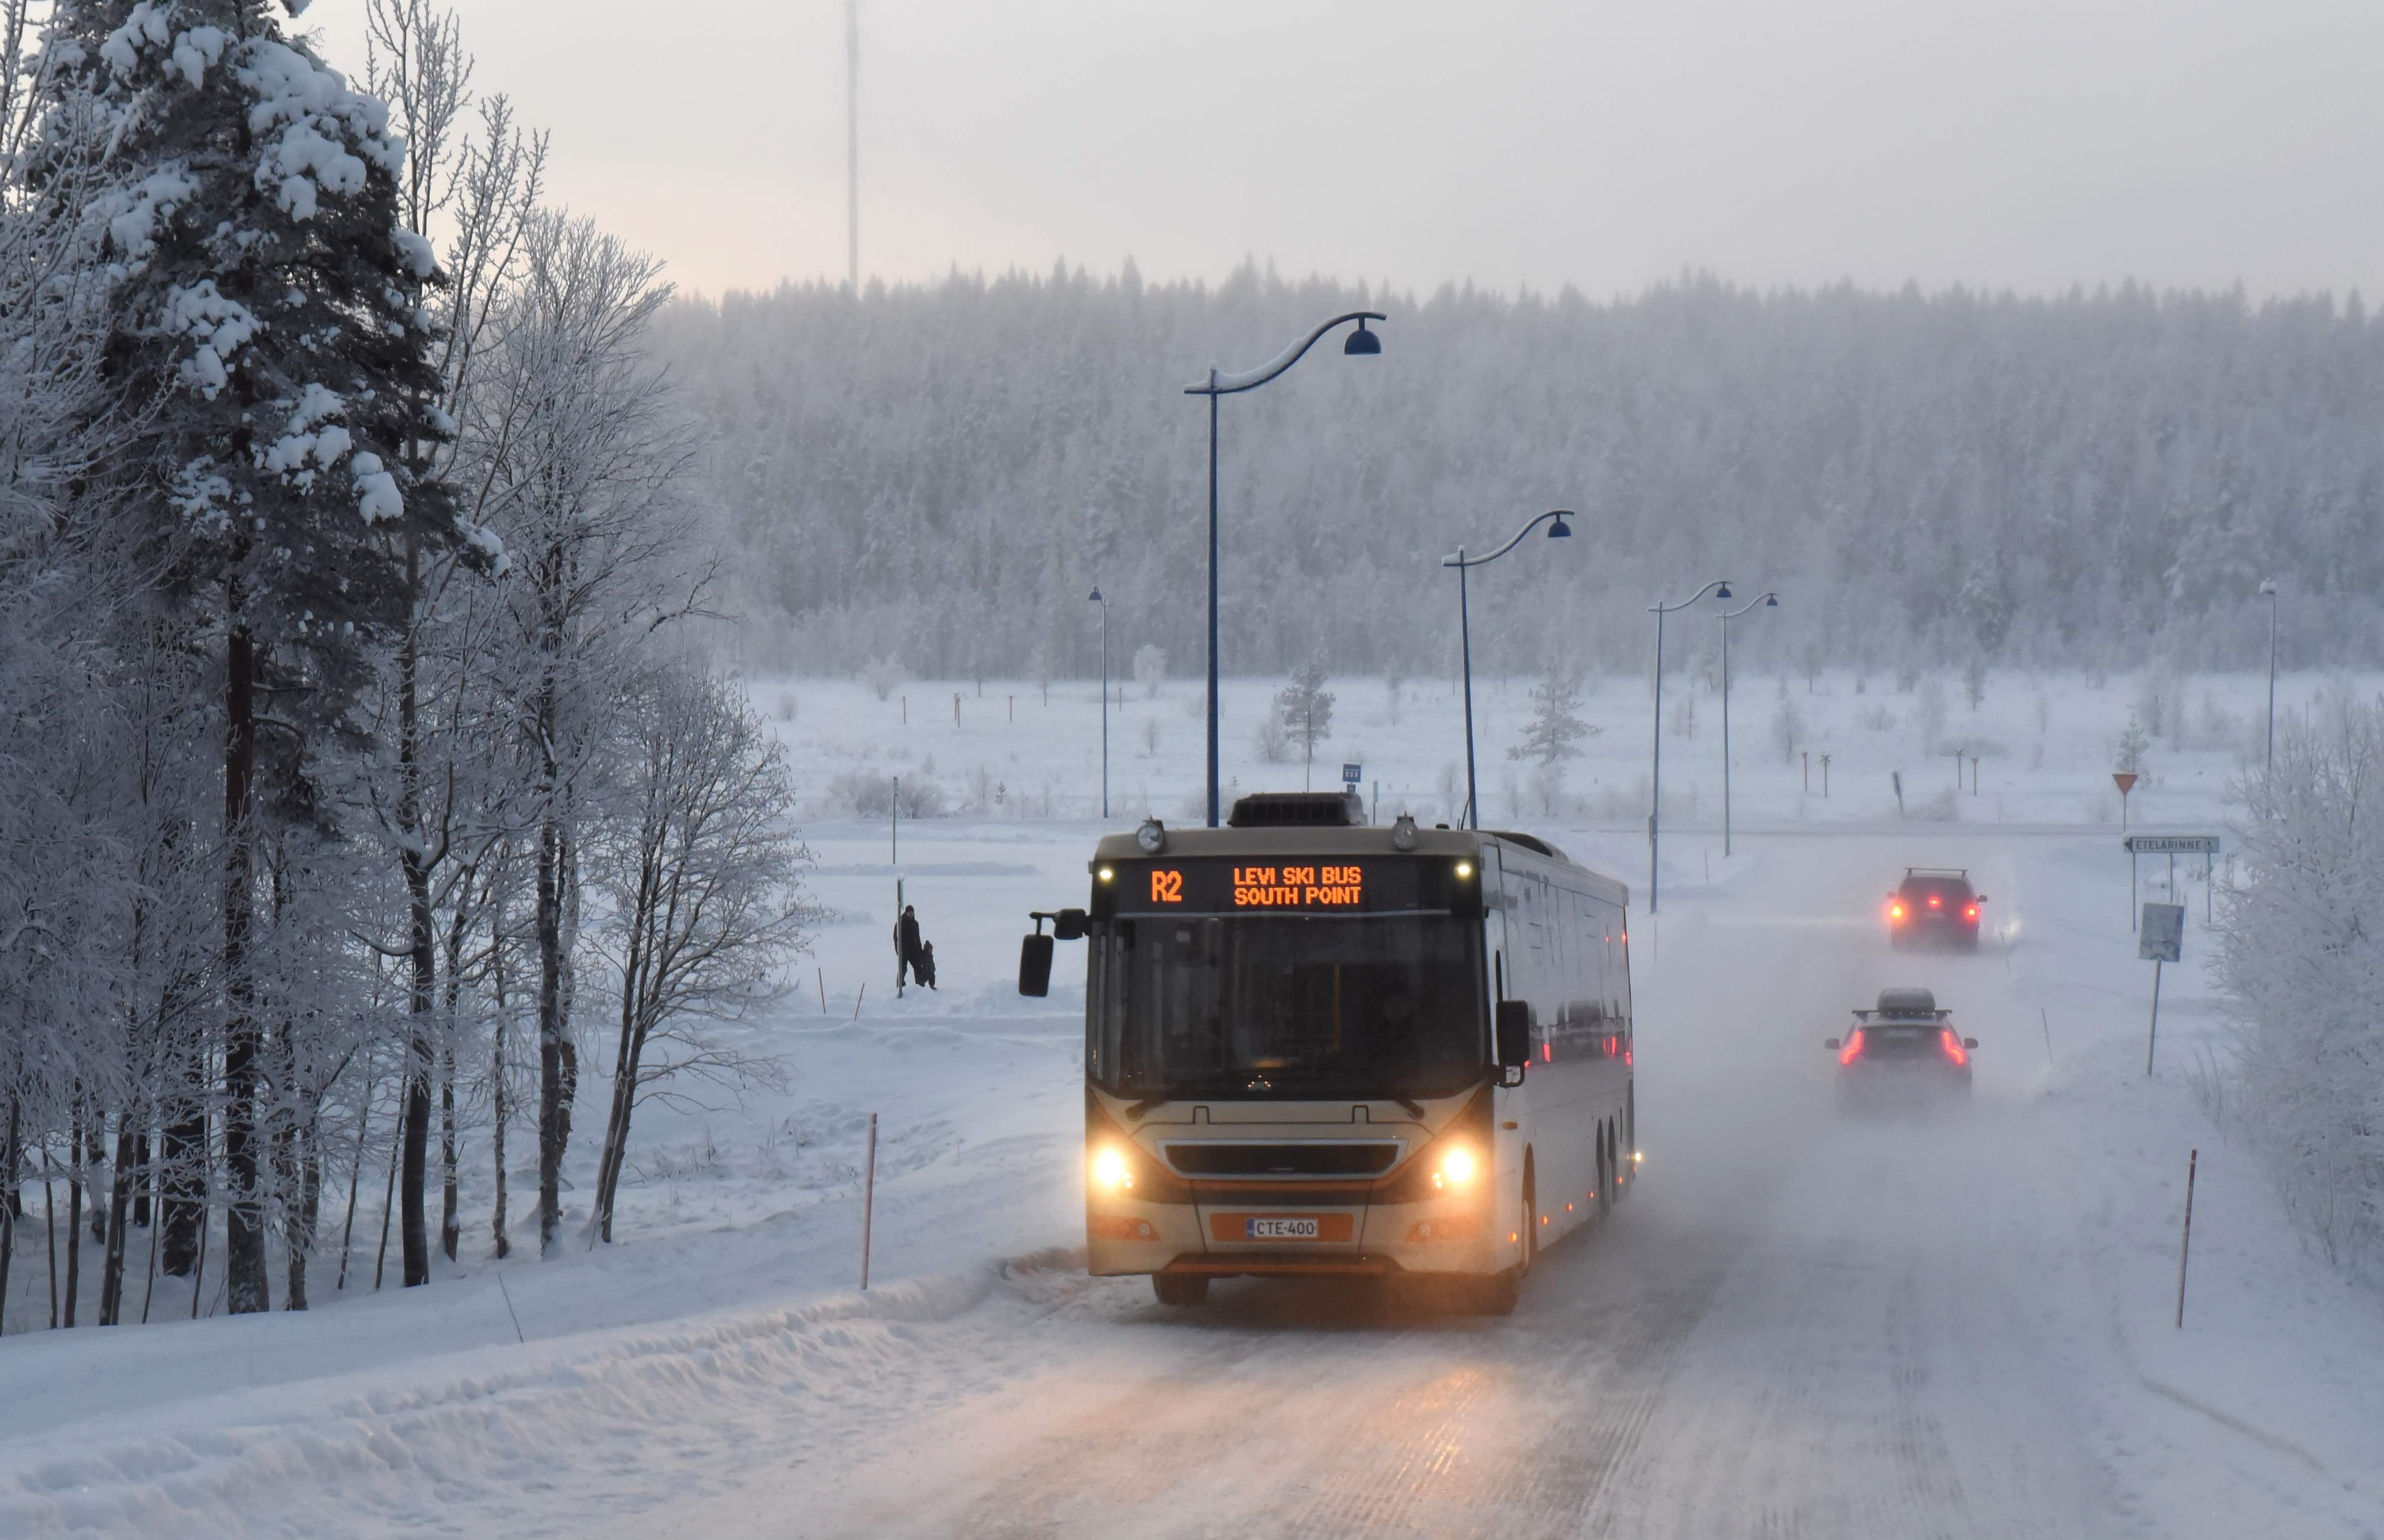 Ski bus routes